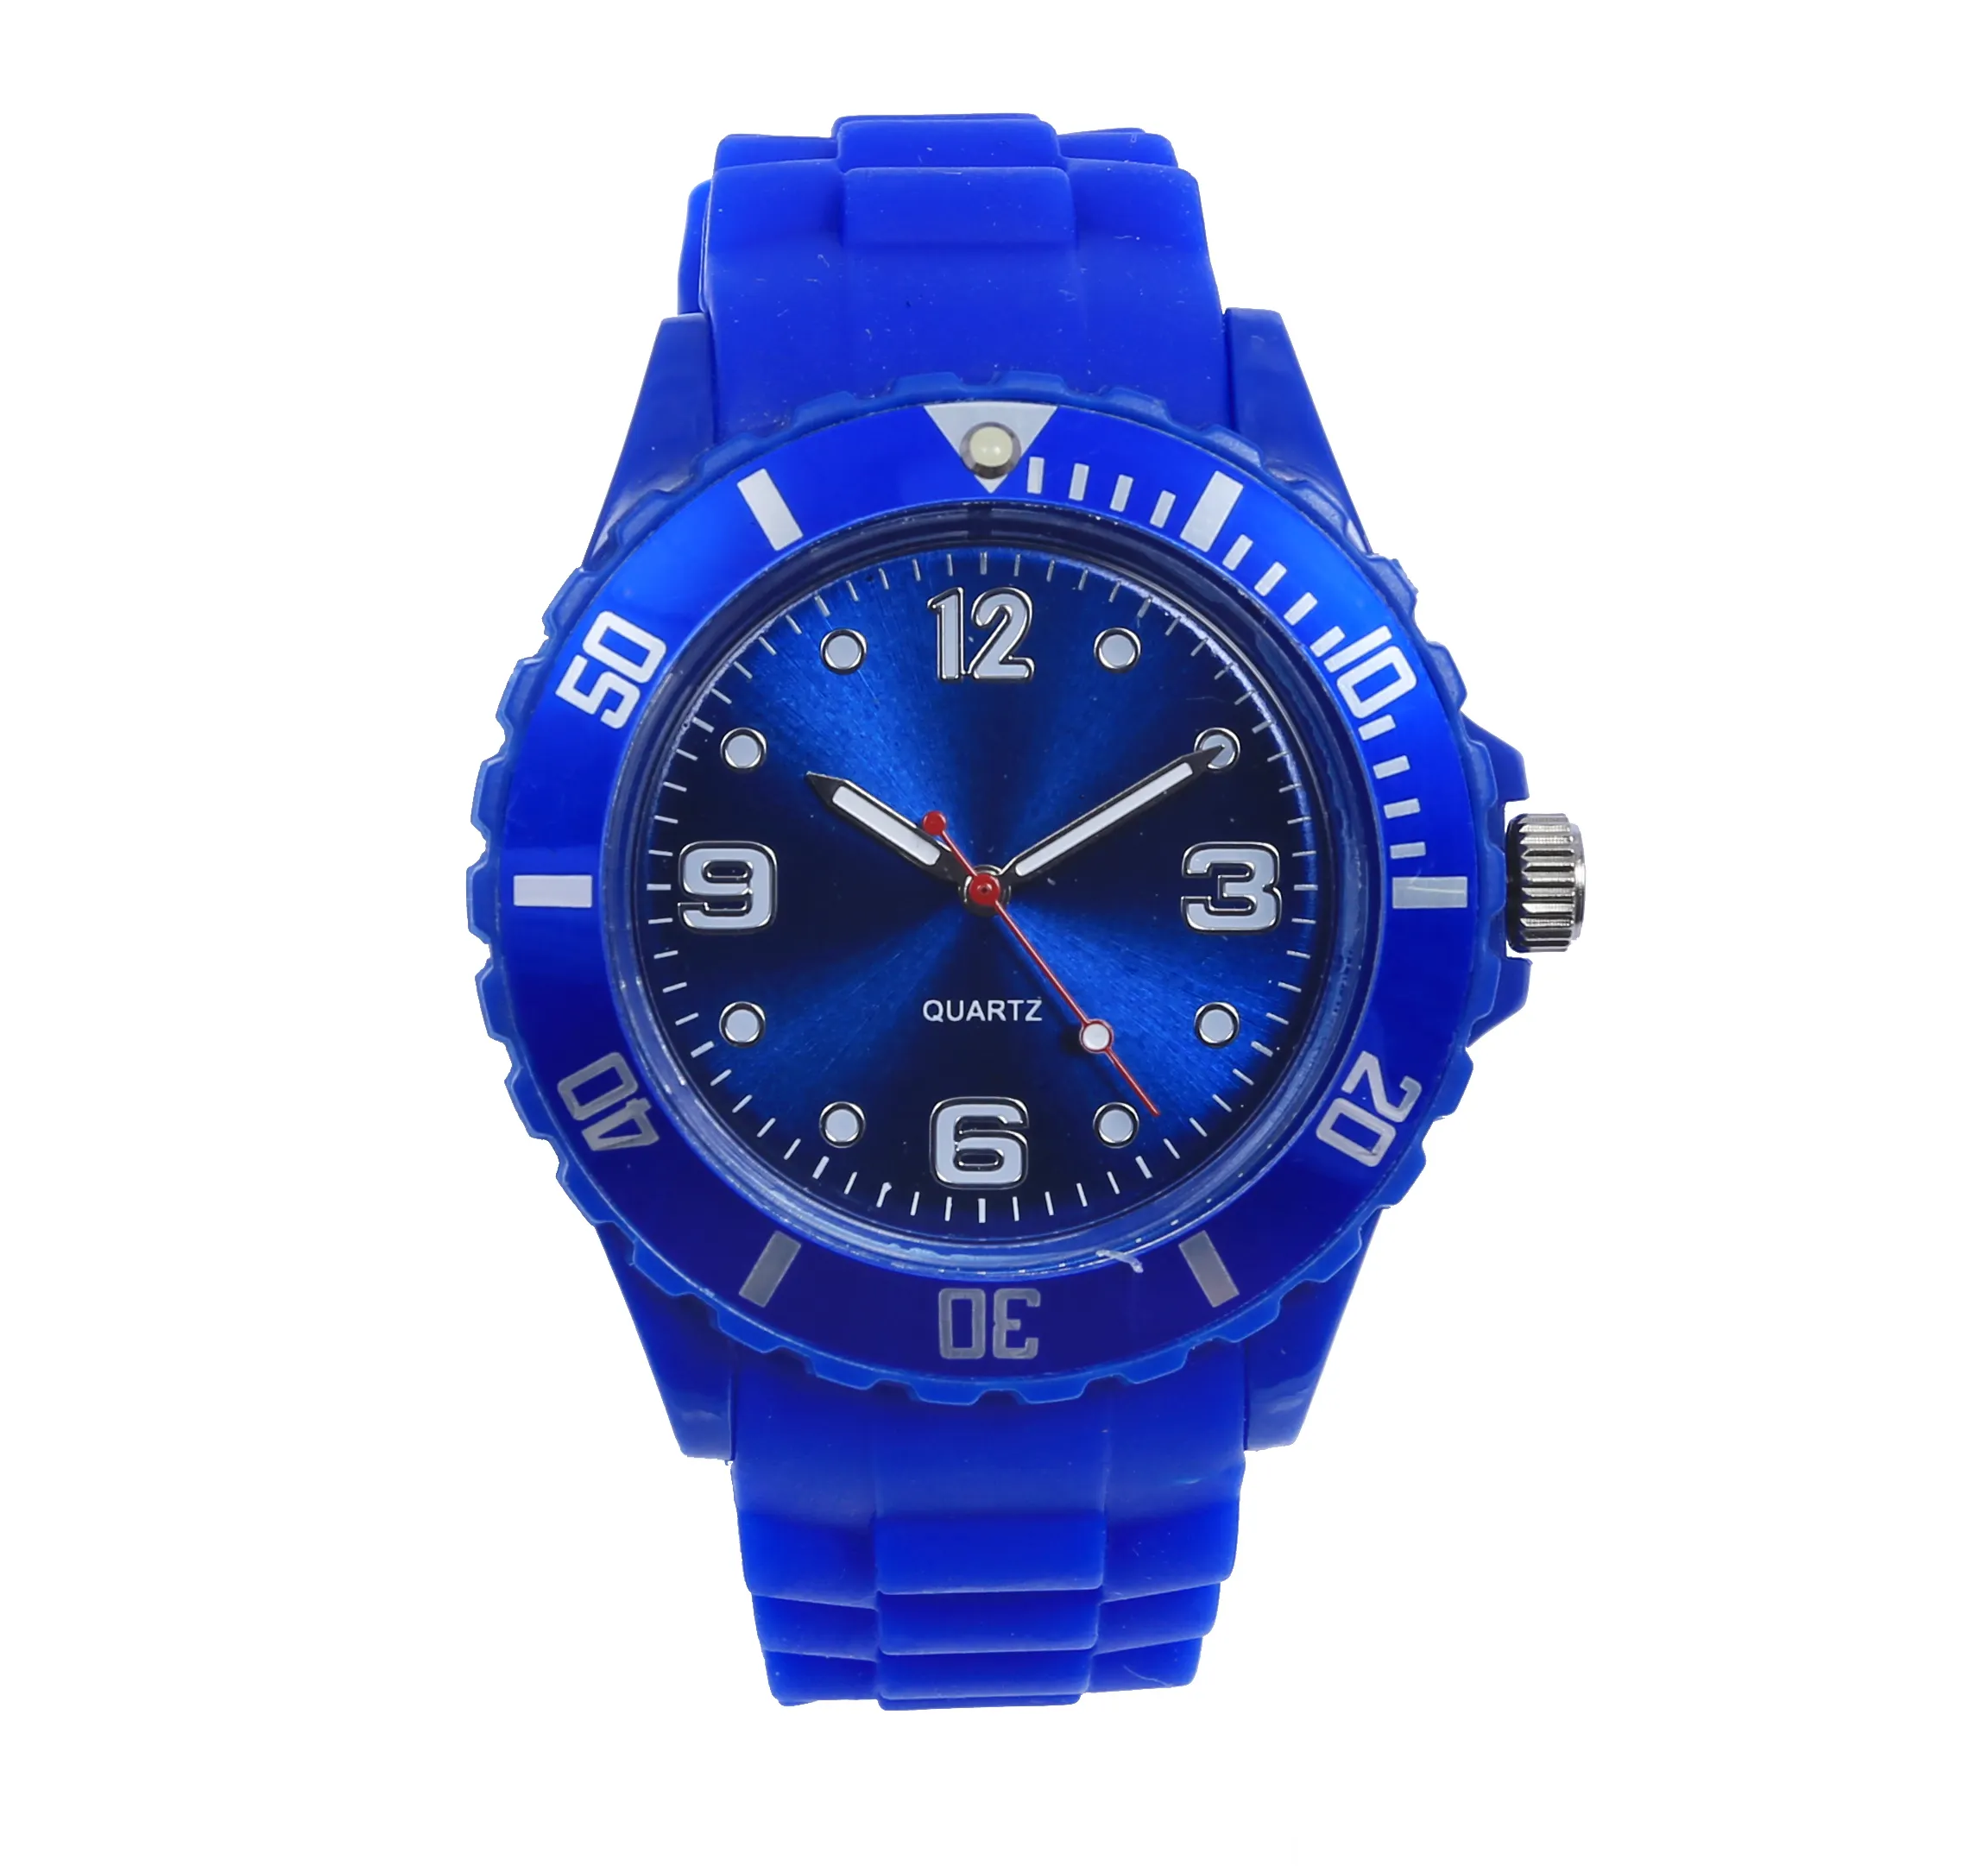 Дешевые силиконовые часы с индивидуальным дизайном, синие силиконовые часы